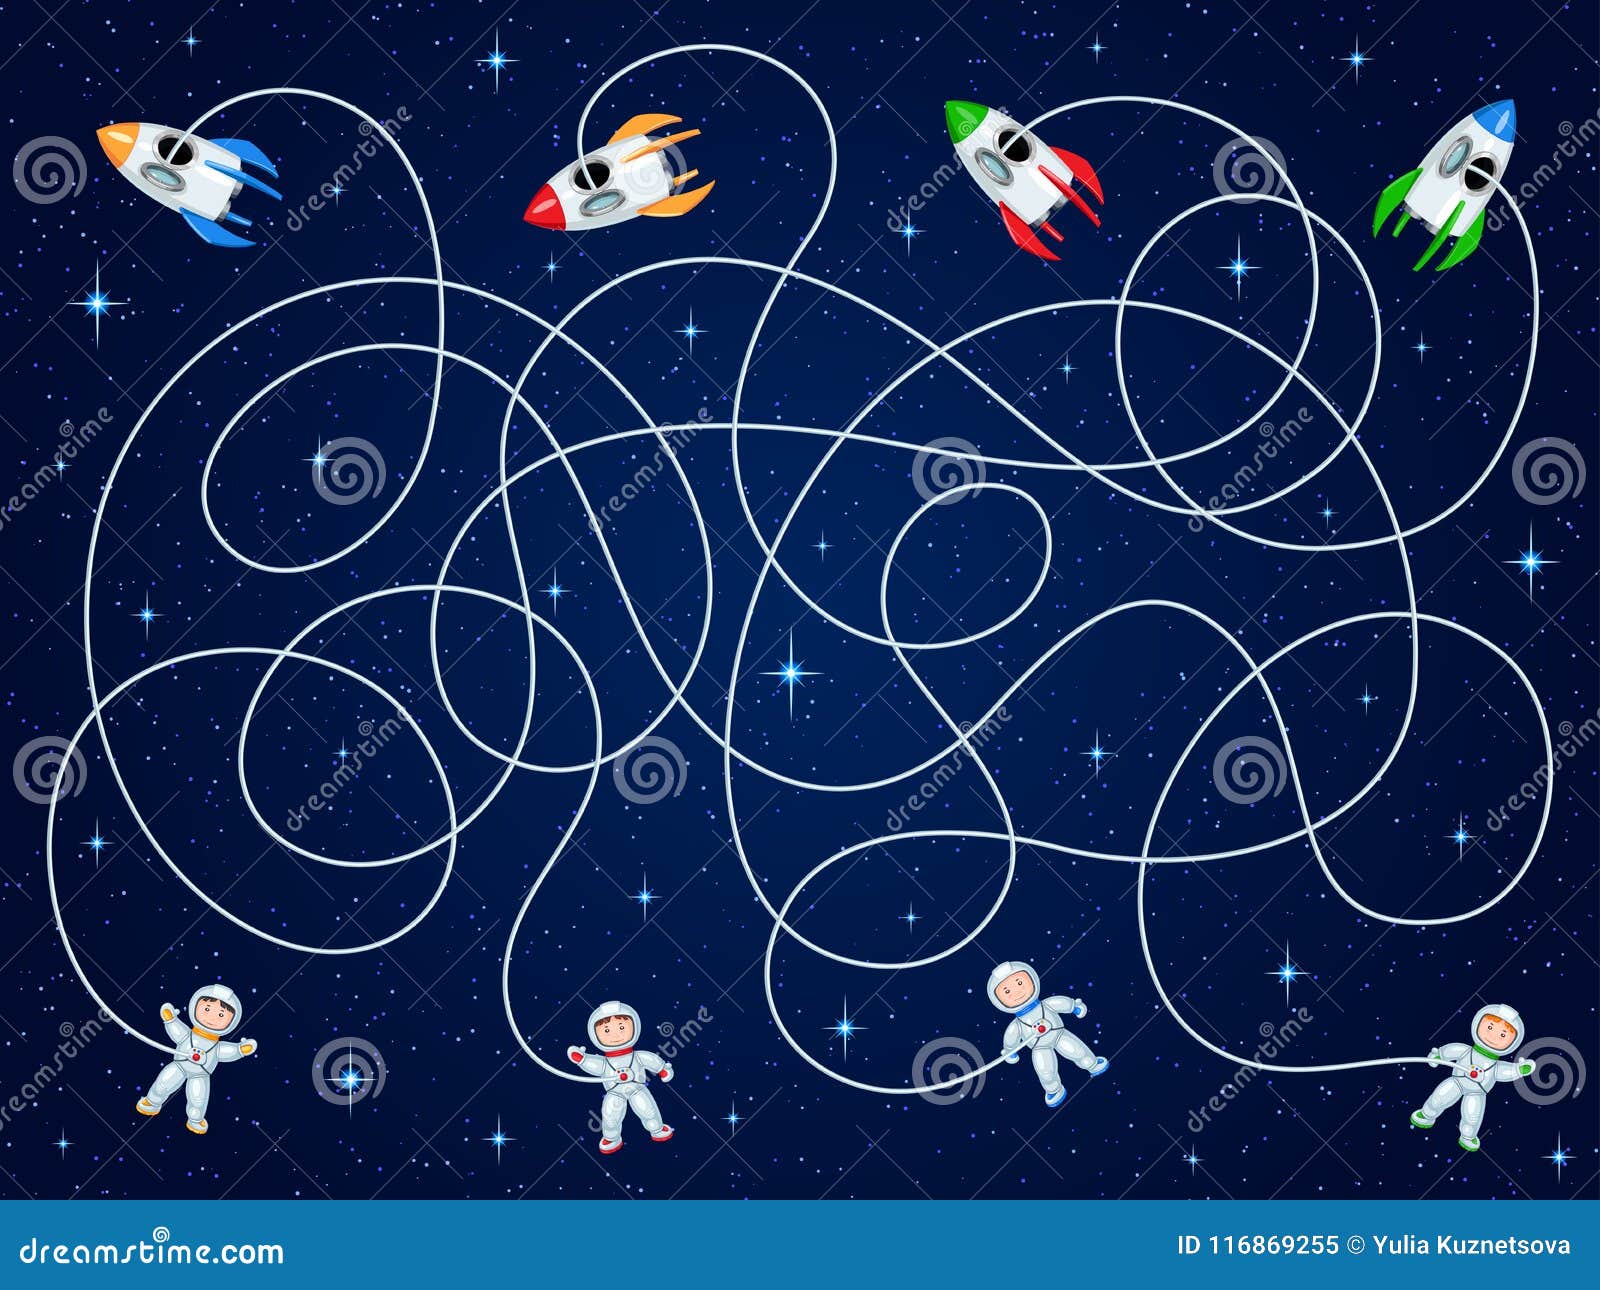 Космос игра для детей 7 лет. Космос для дошкольников. Детям о космосе. Тема космос для детей. О космосе (развивающая игра).